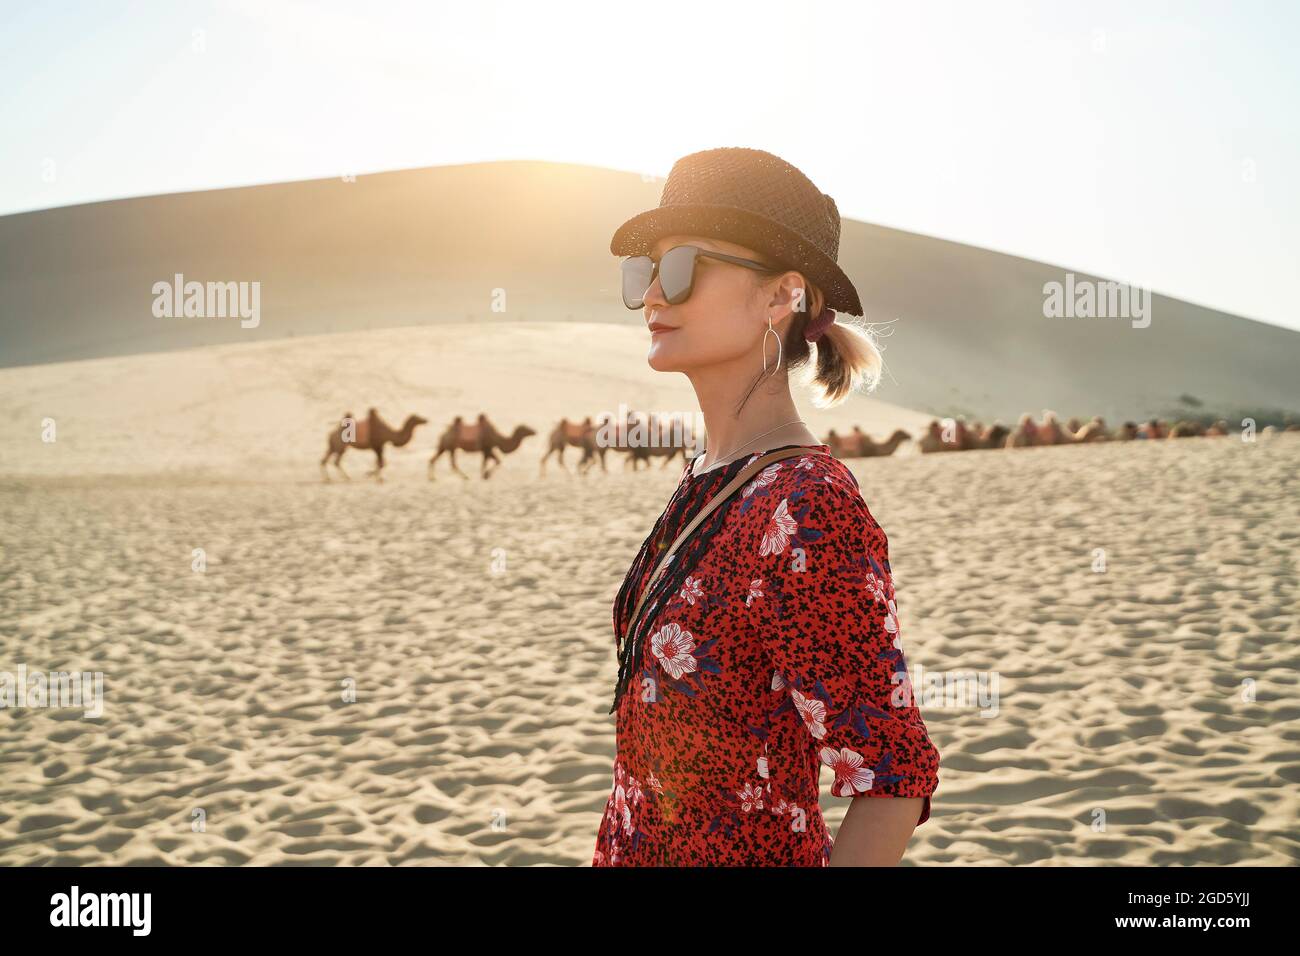 femme asiatique en robe rouge regardant la vue dans le désert avec caravane de chameaux et d'énormes dunes de sable en arrière-plan Banque D'Images